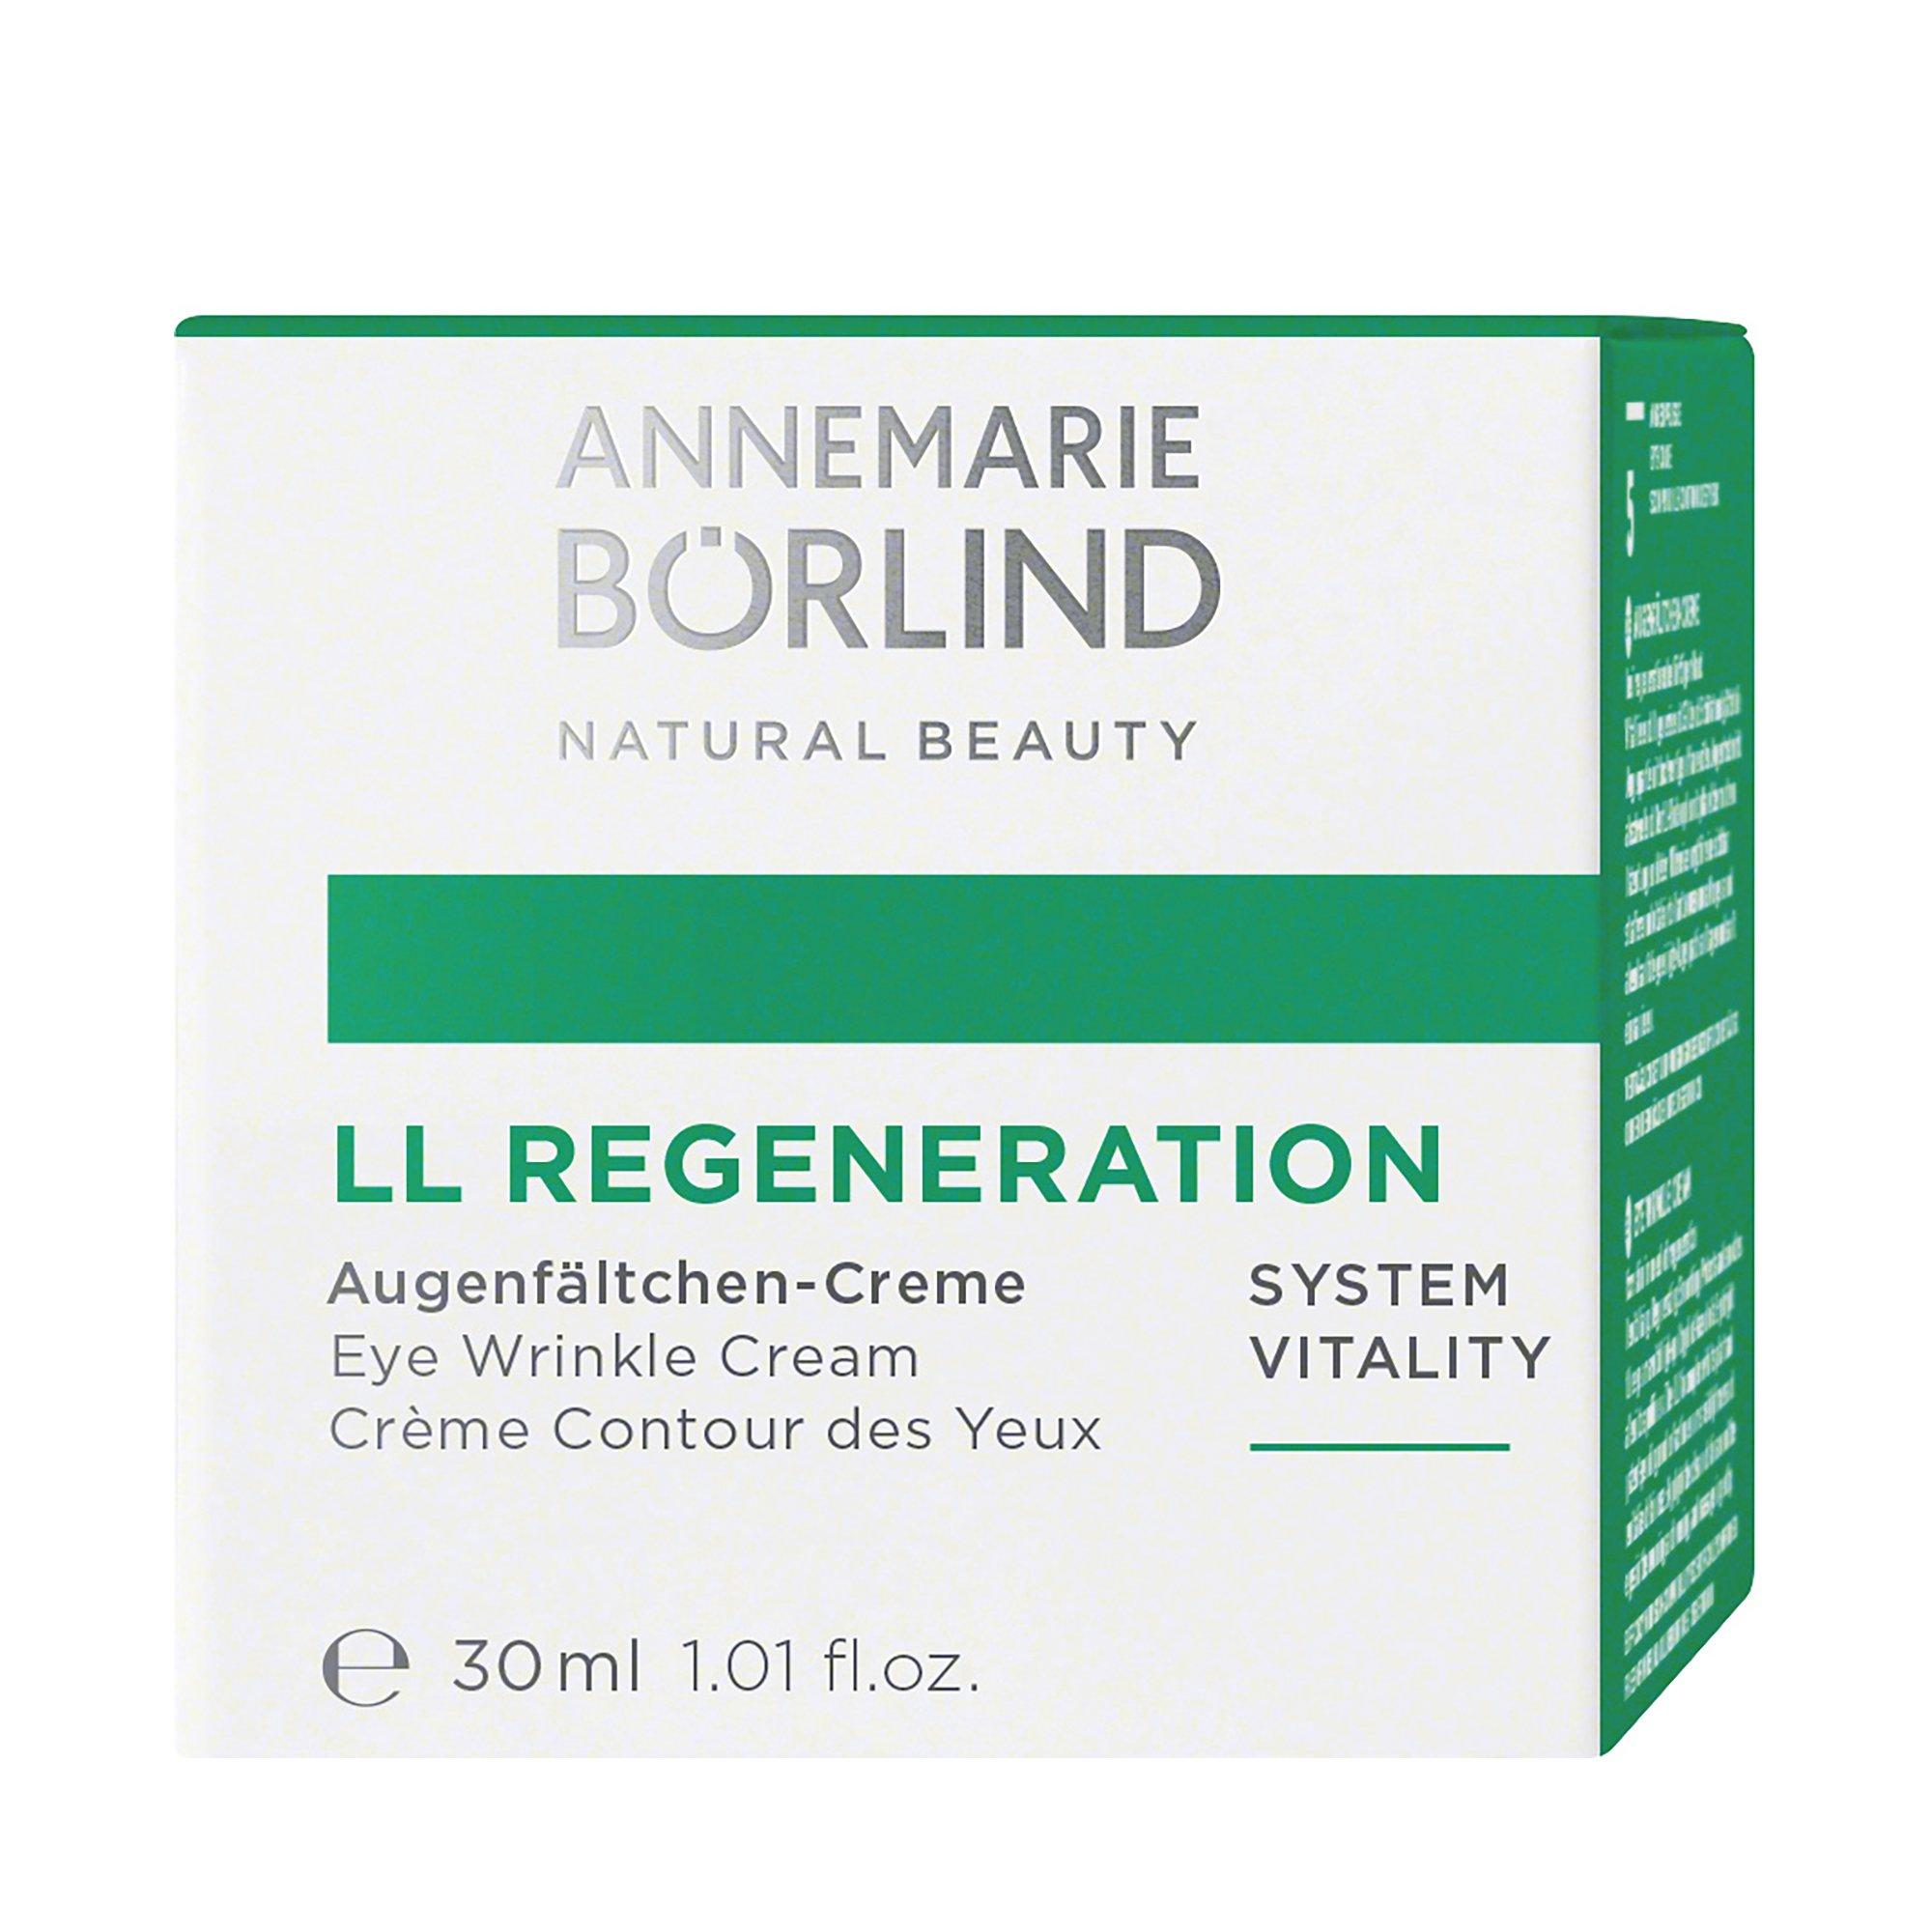 Annemarie Börlind LL Regeneration Augenfältchen-Creme Ll Regeneration Crème Contour Des Yeux 